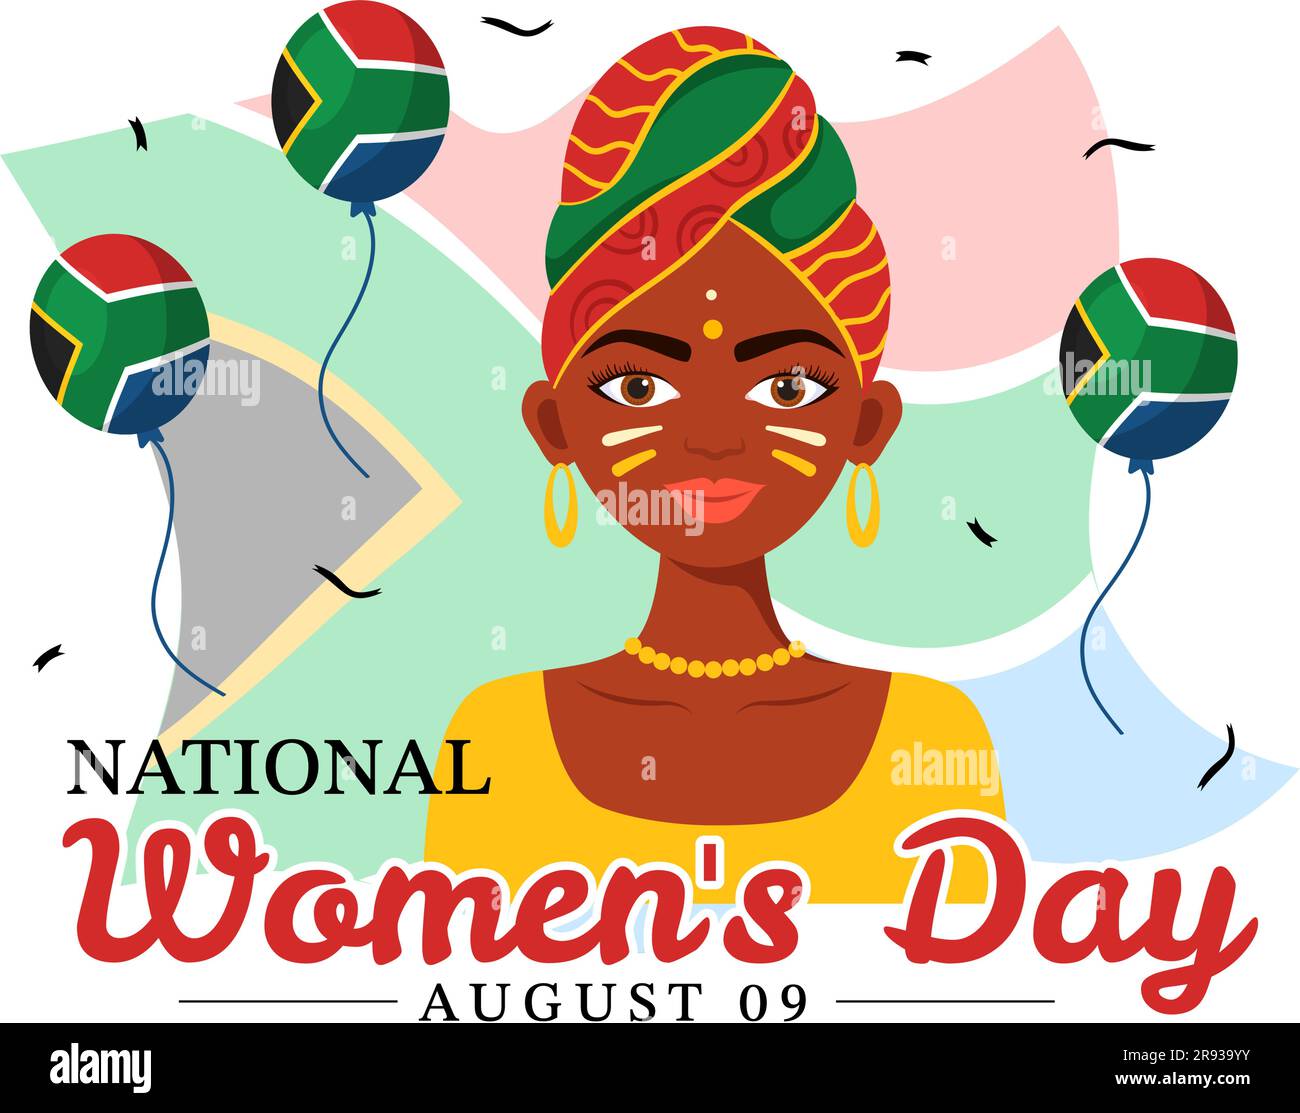 Happy Women Africa Day Celebration Vector Illustration mit ethnischer schwarzer Frau und afrikanischer Flagge in flachen, handgezeichneten Landing-Page-Vorlagen Stock Vektor